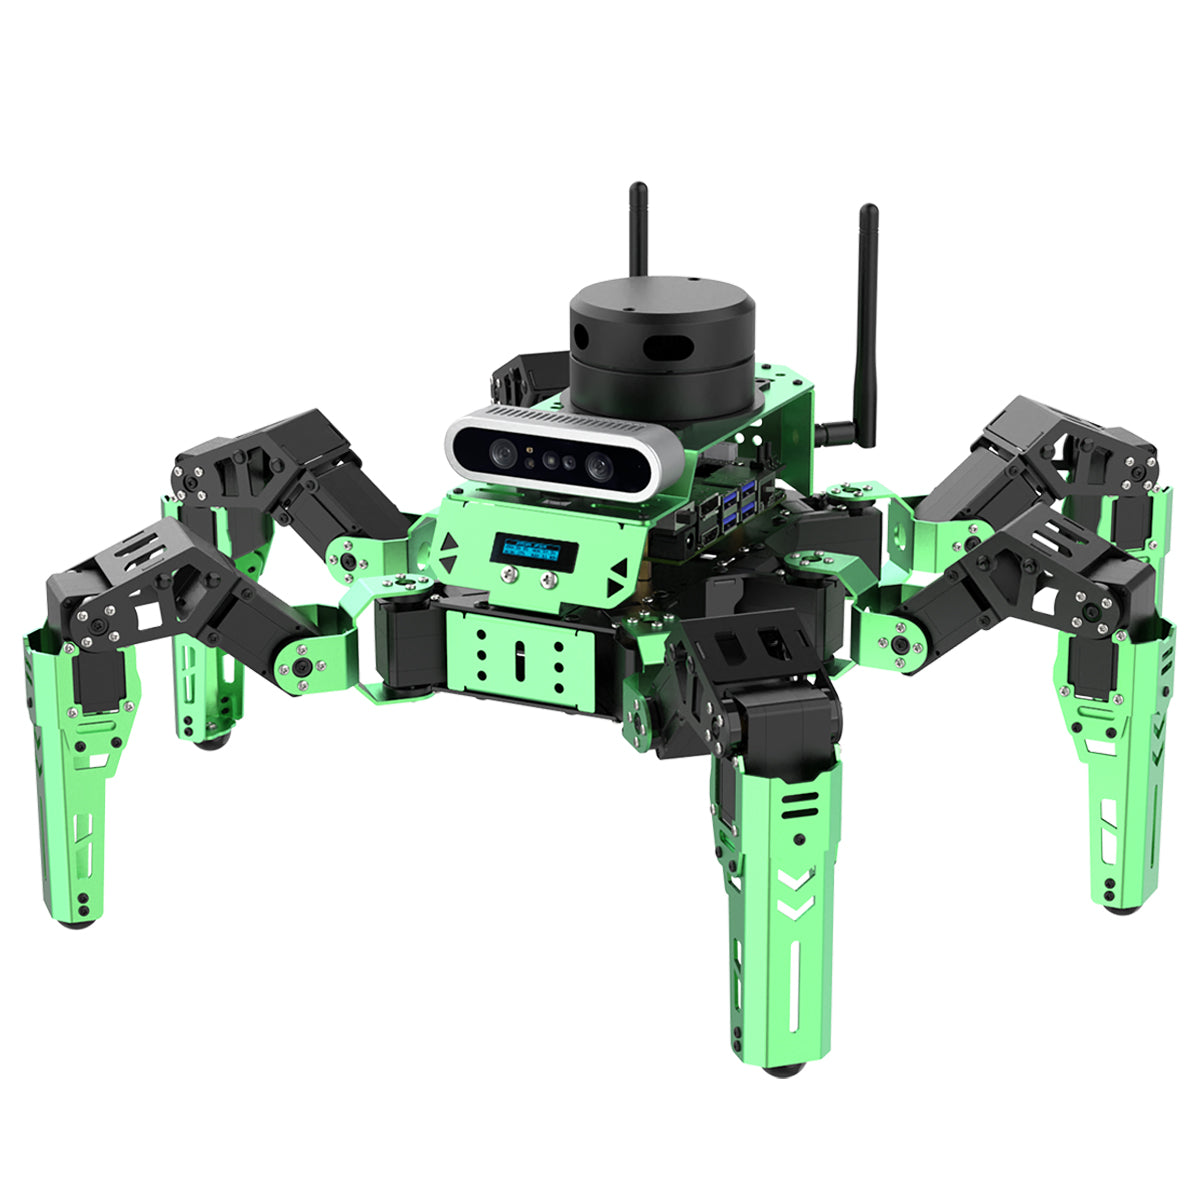 Hexapod Robot Kit